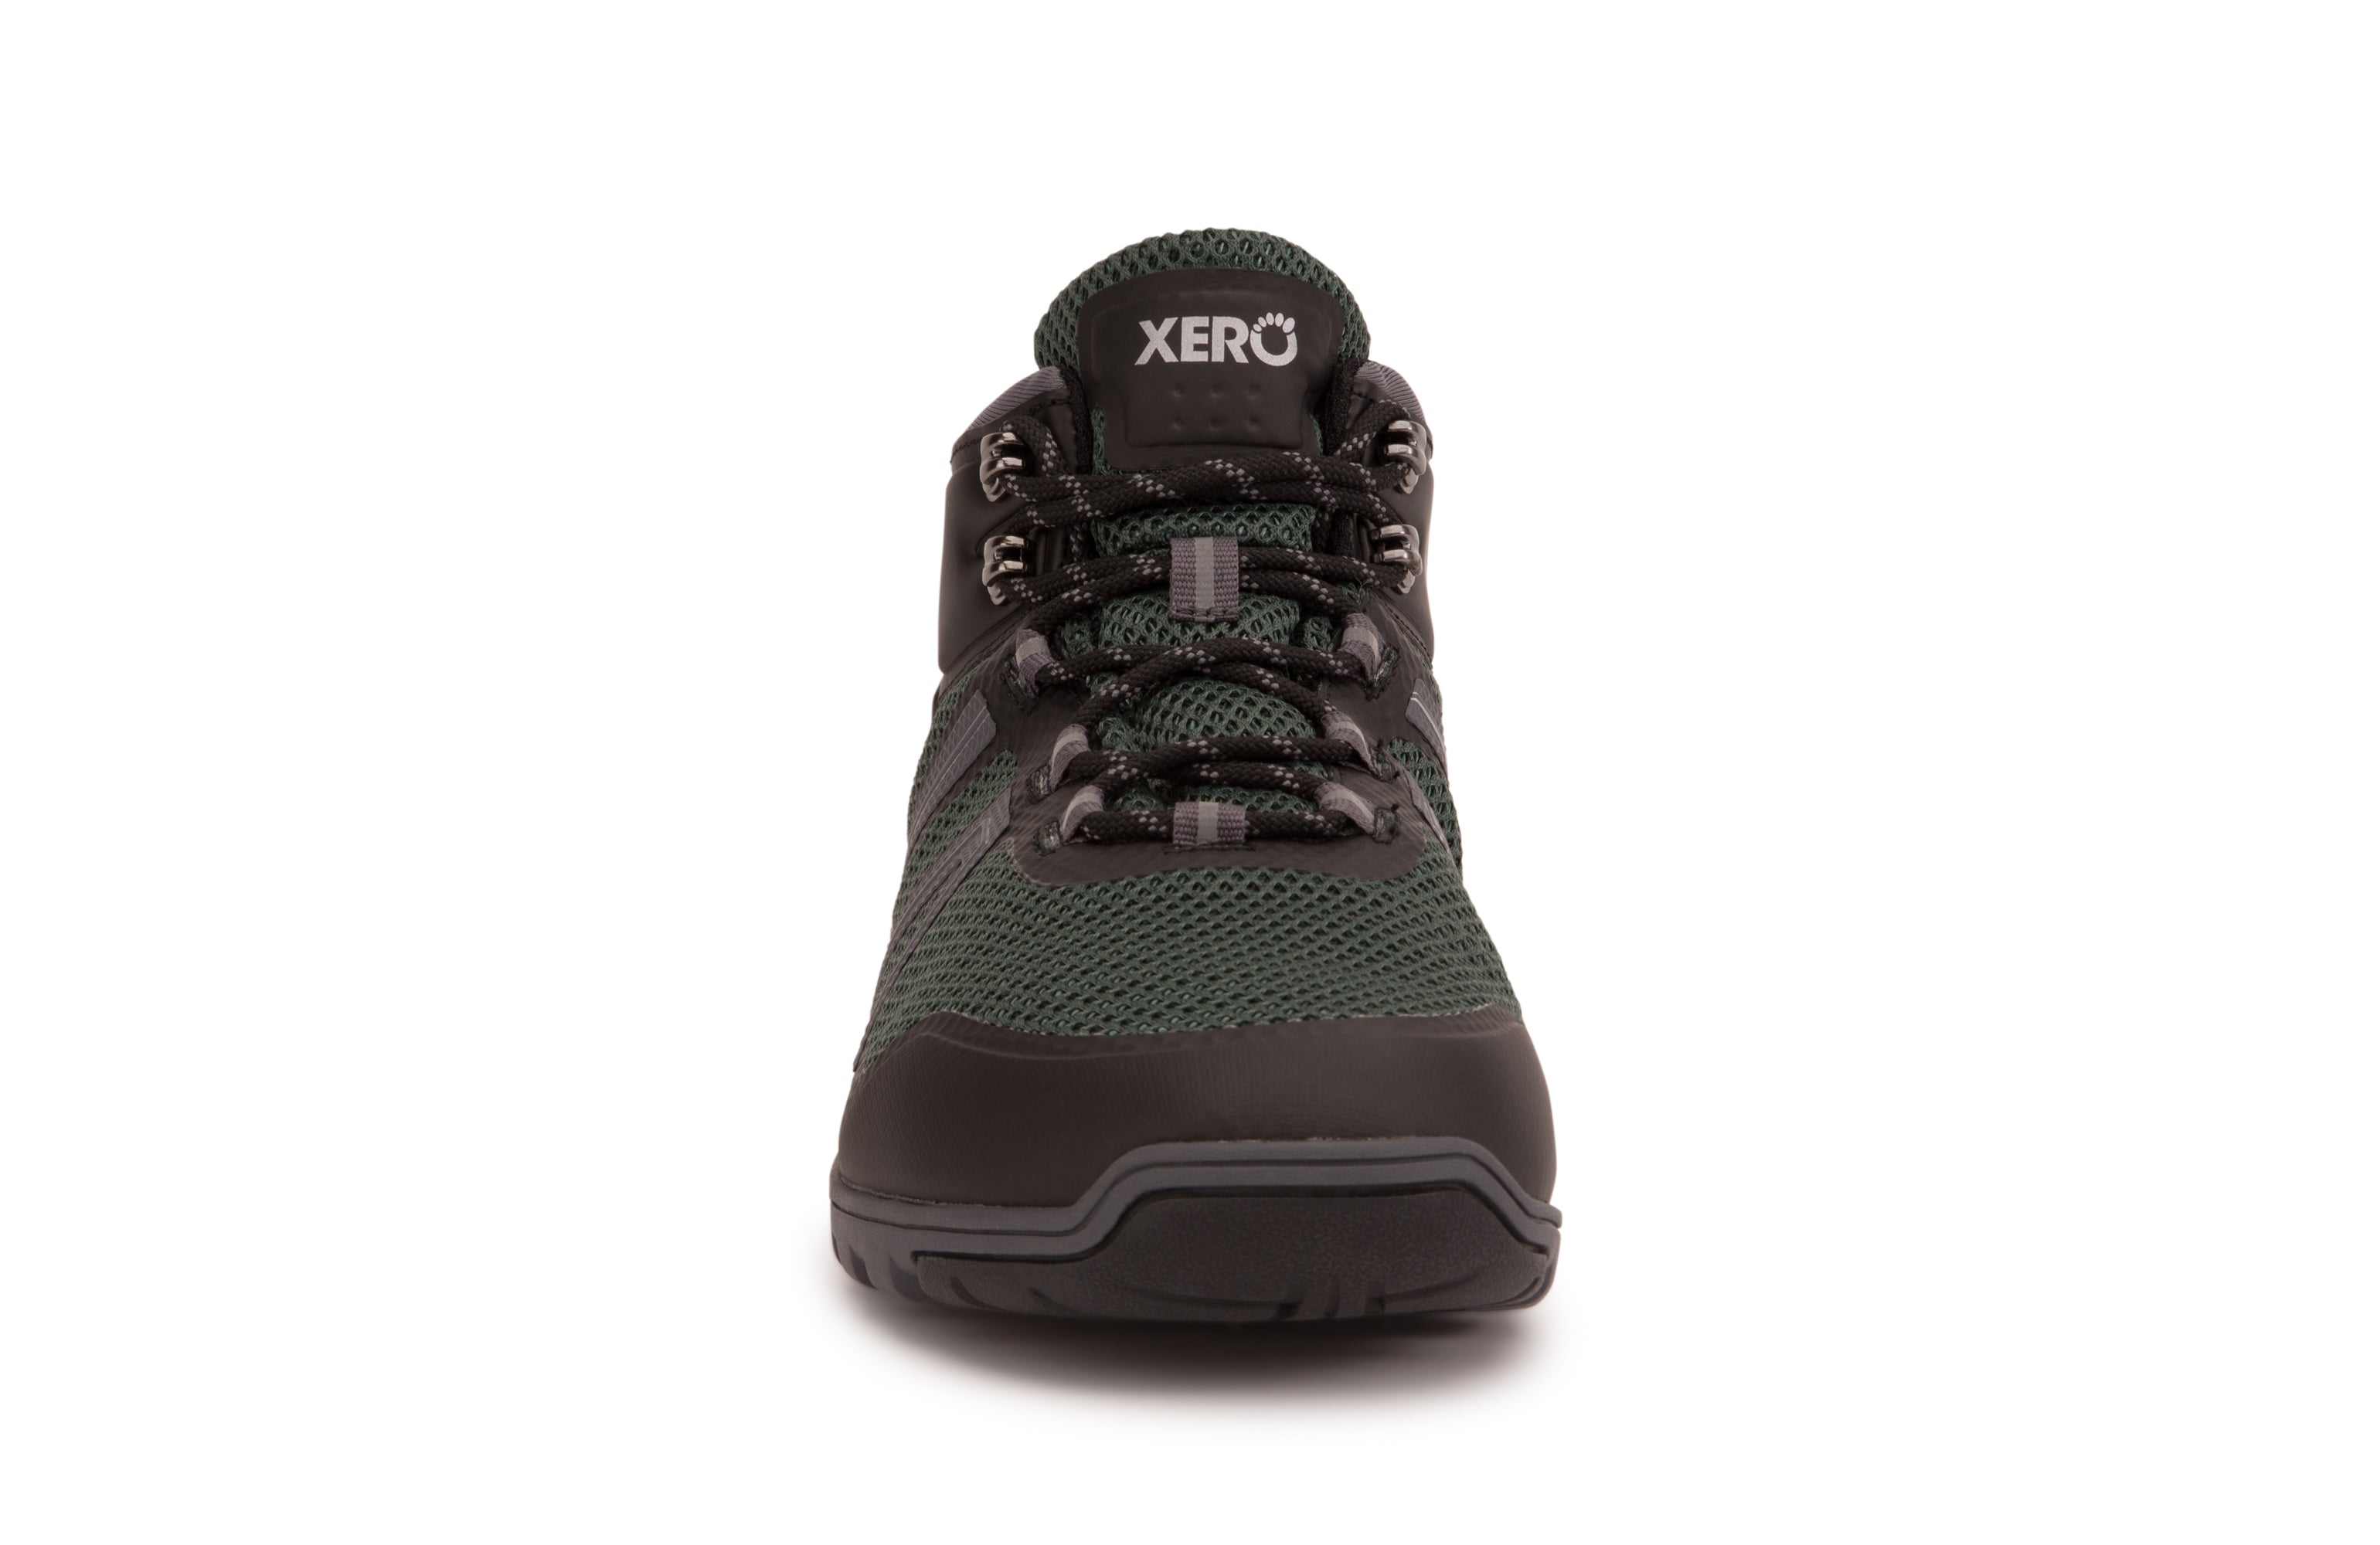 Xero Shoes Xcursion Fusion barfods støvler til mænd i farven spruce, forfra